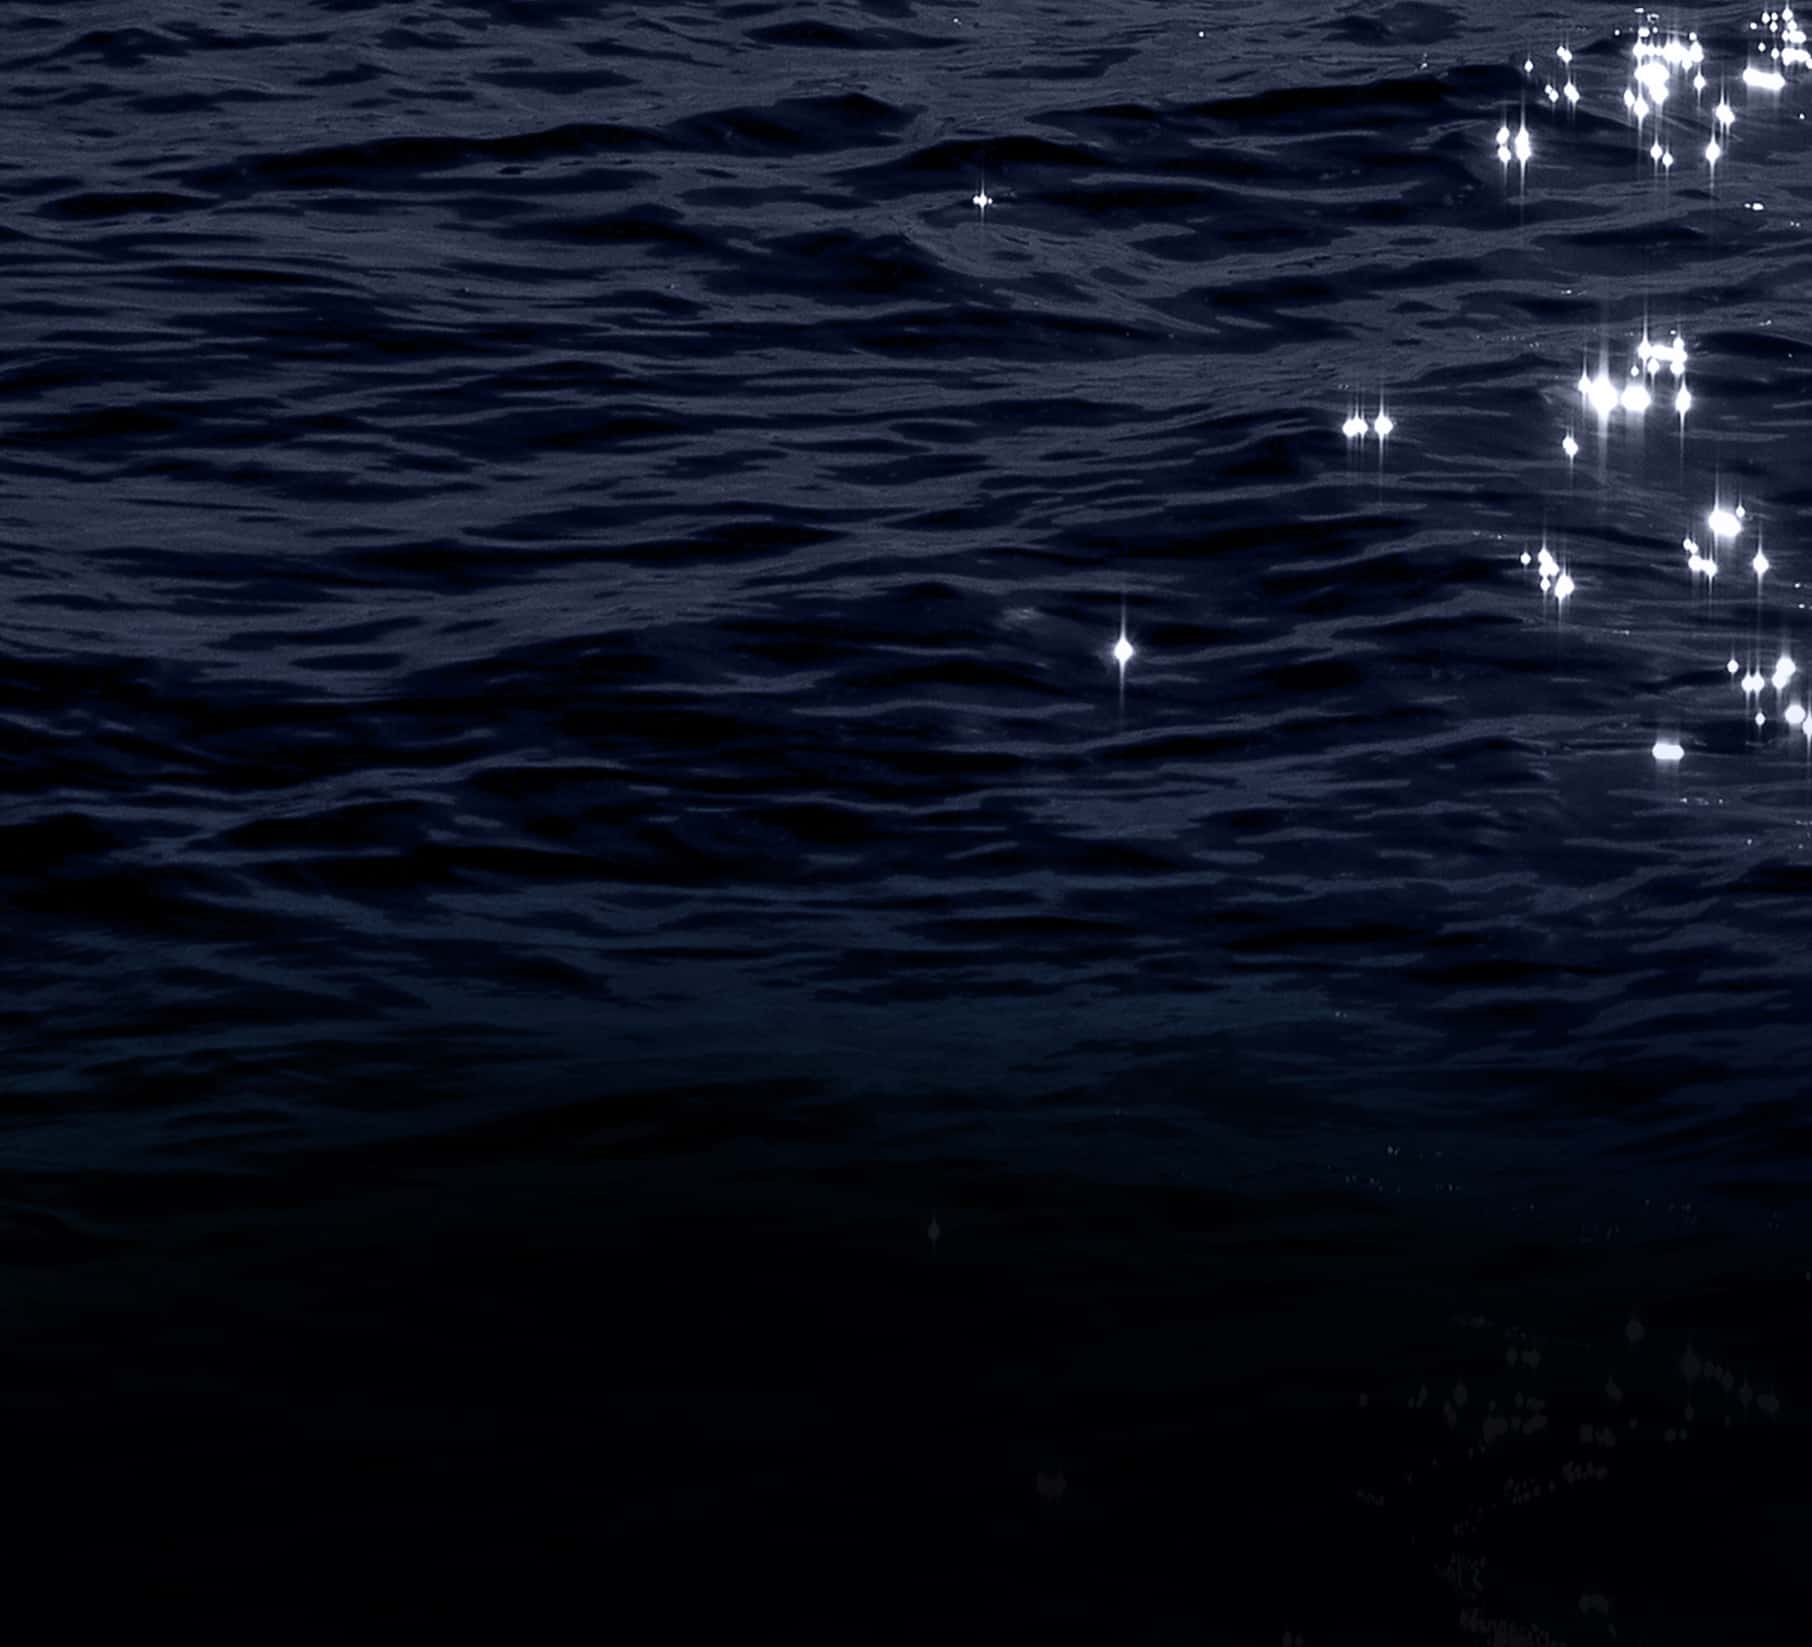 sparkling dark waters of the ocean